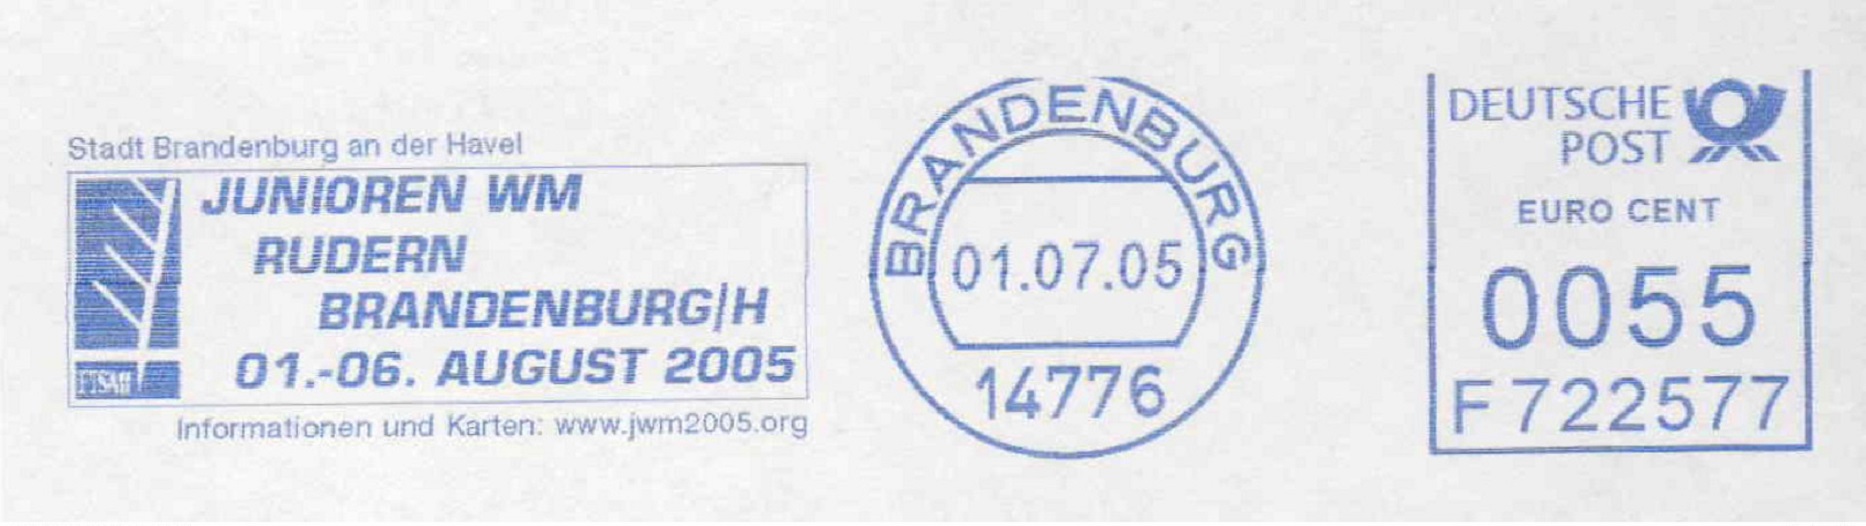 PM GER 2005 July 1st JWRC Brandenburg blue meter mark